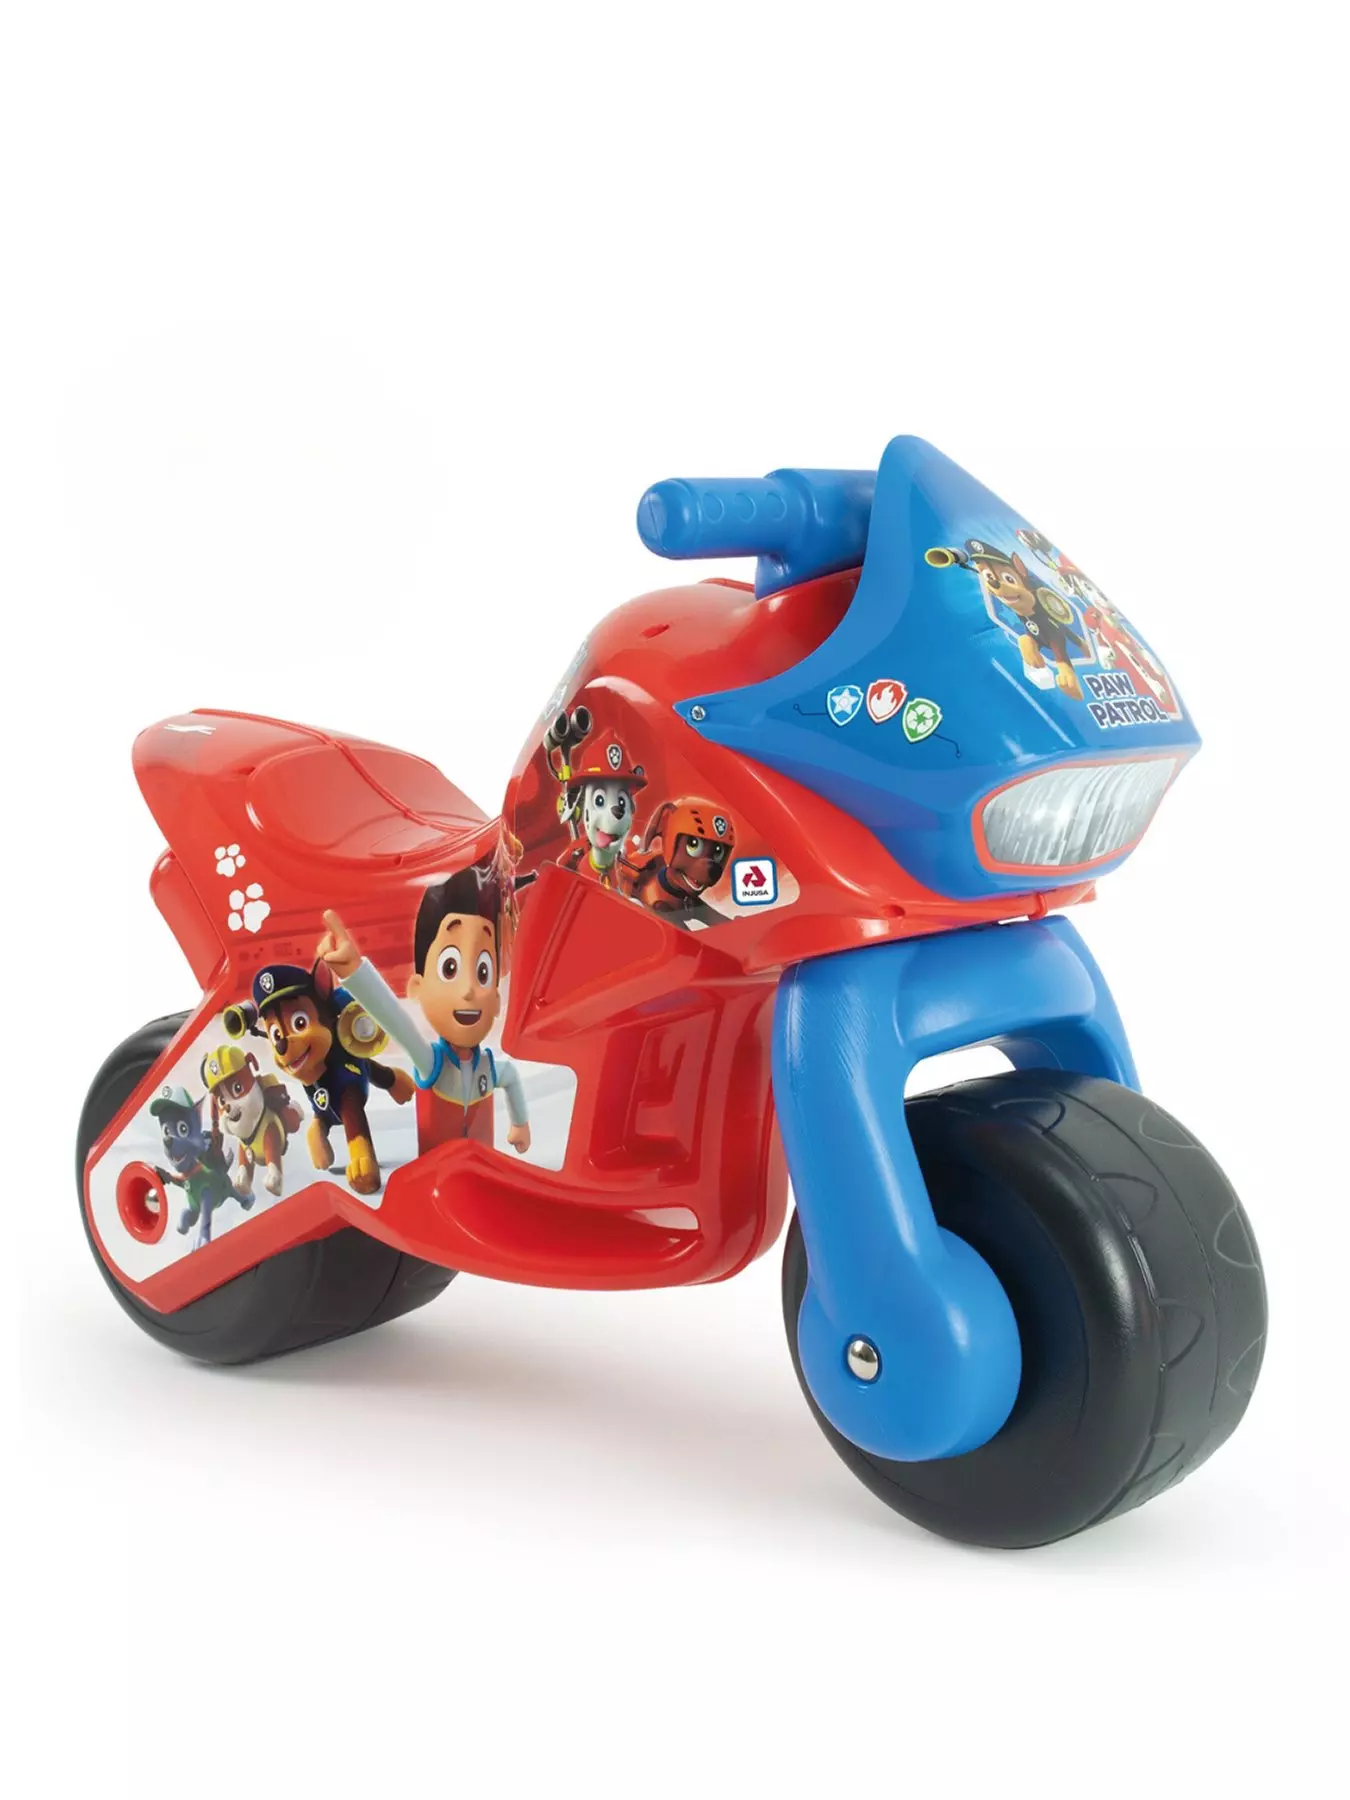 Bike Trikes, Ride On Toys